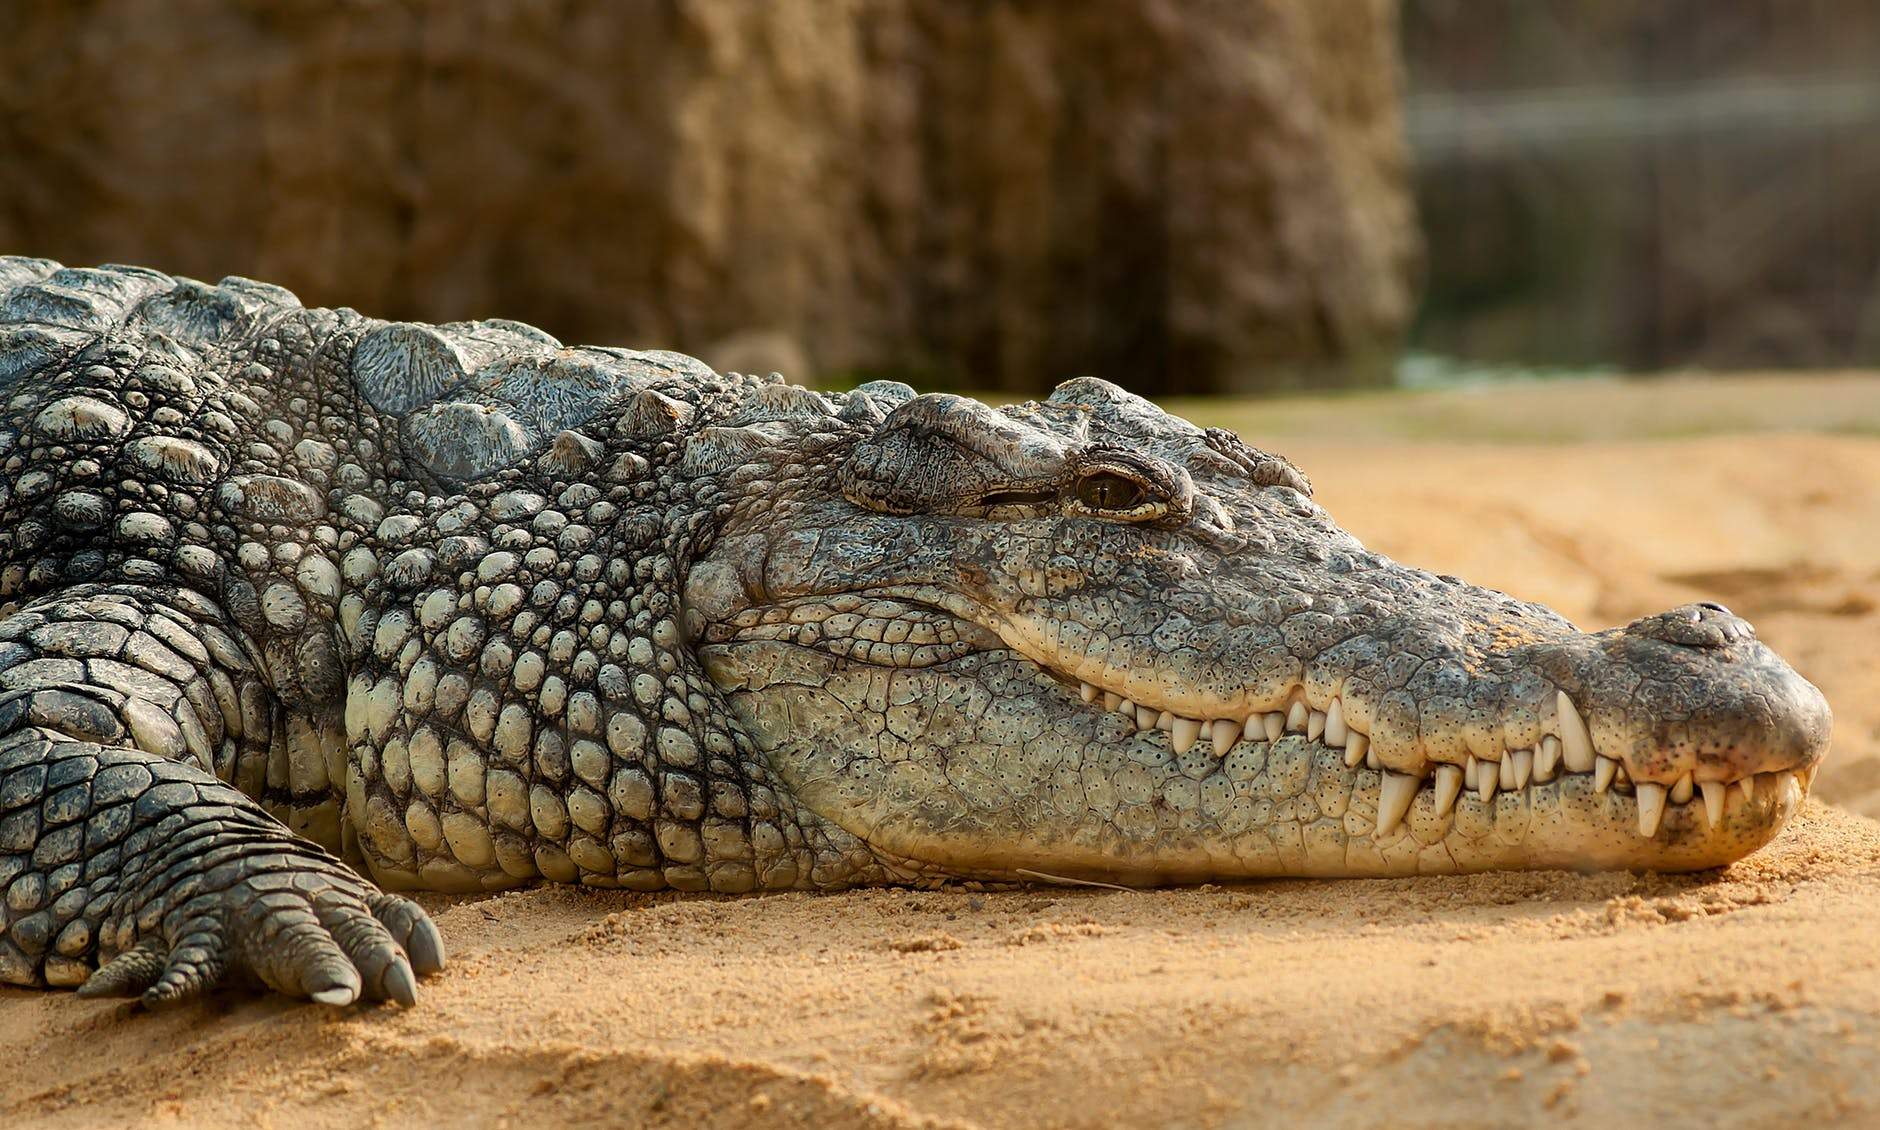 Cientistas acham nova espécie de crocodilo gigante